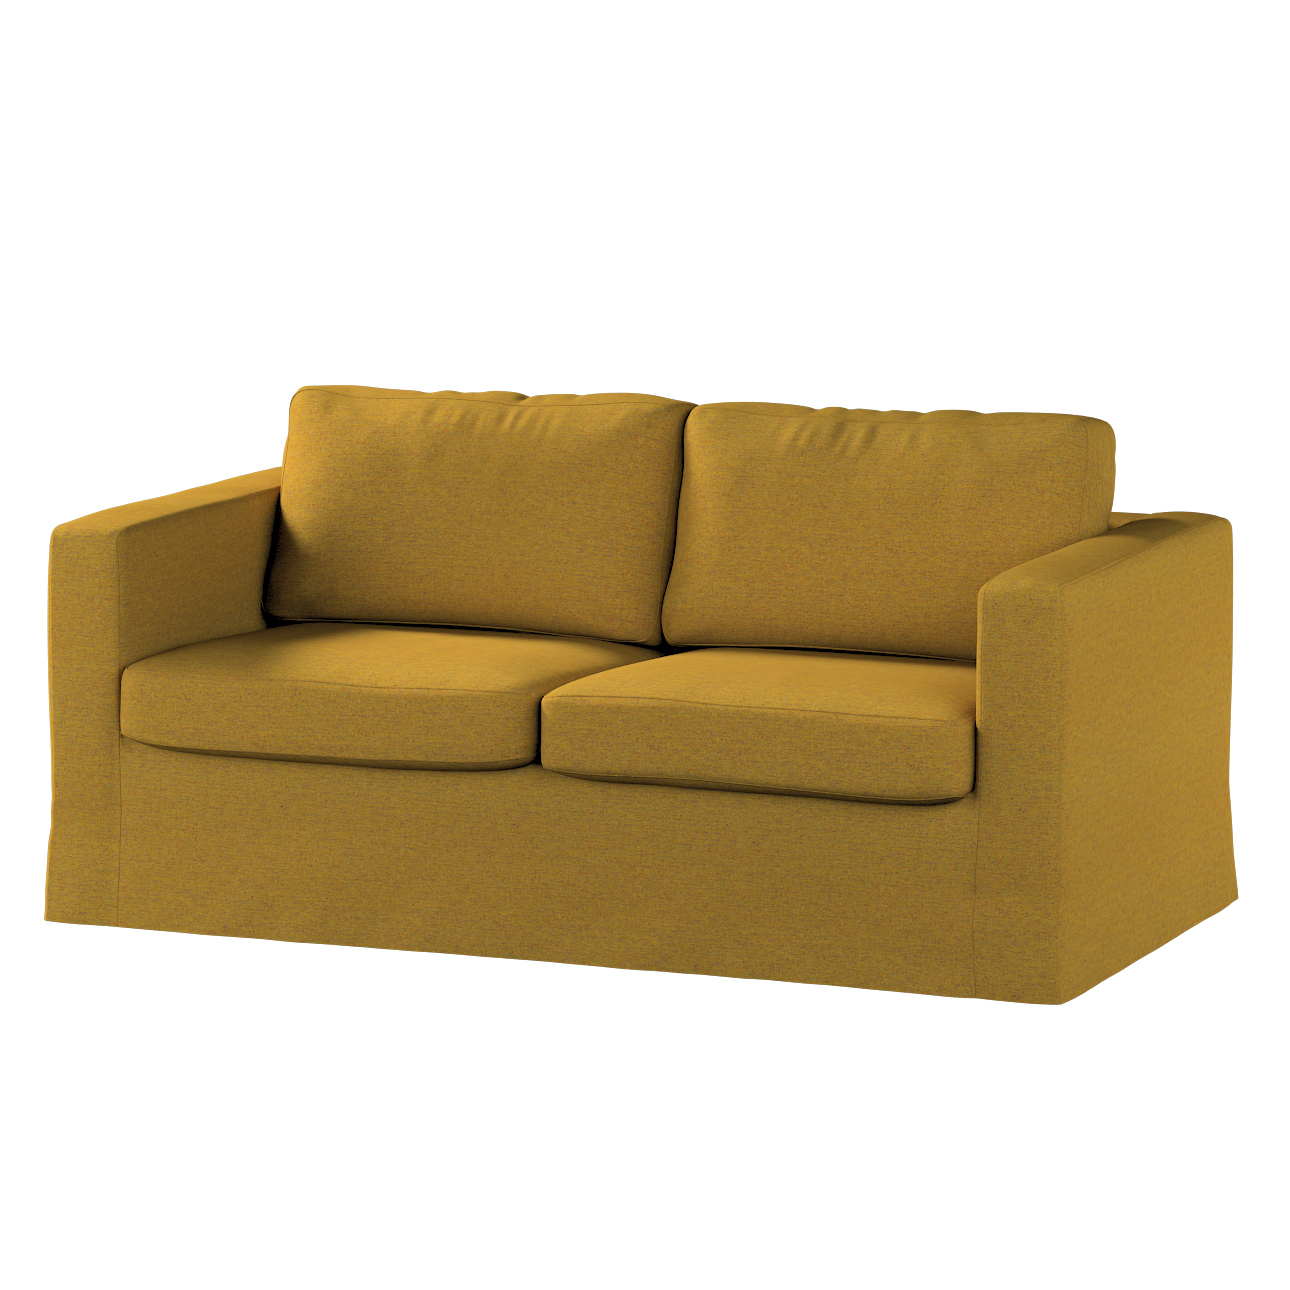 Bezug für Karlstad 2-Sitzer Sofa nicht ausklappbar, lang, gelb, Sofahusse, günstig online kaufen